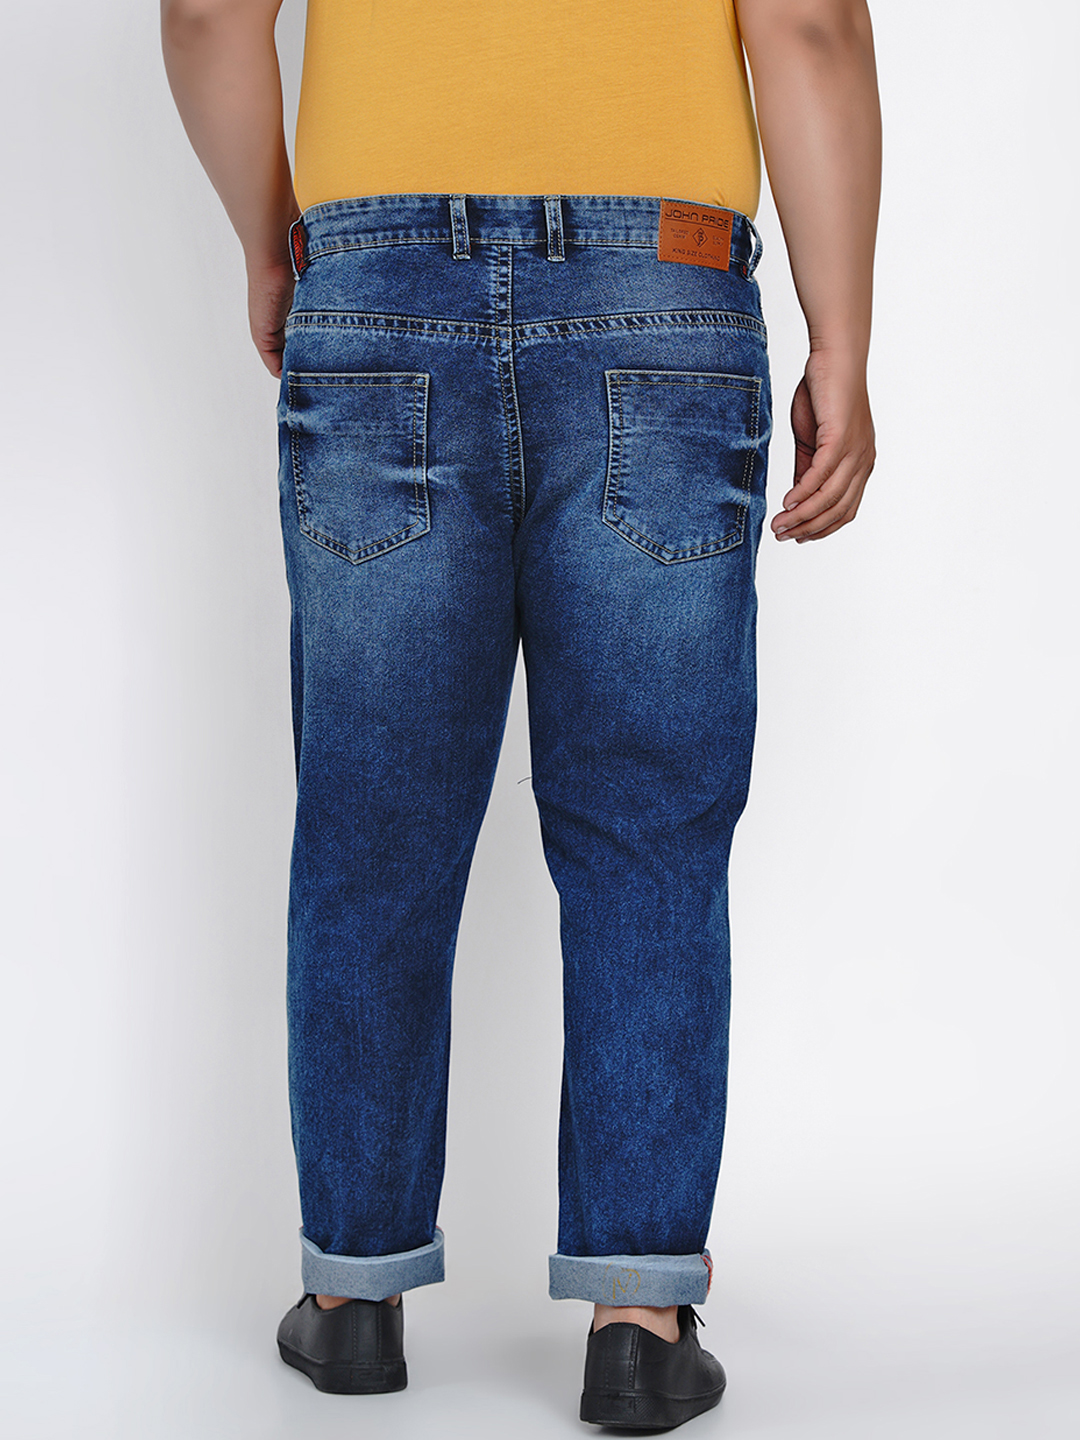 bottomwear/jeans/JPJ2013/jpj2013-5.jpg